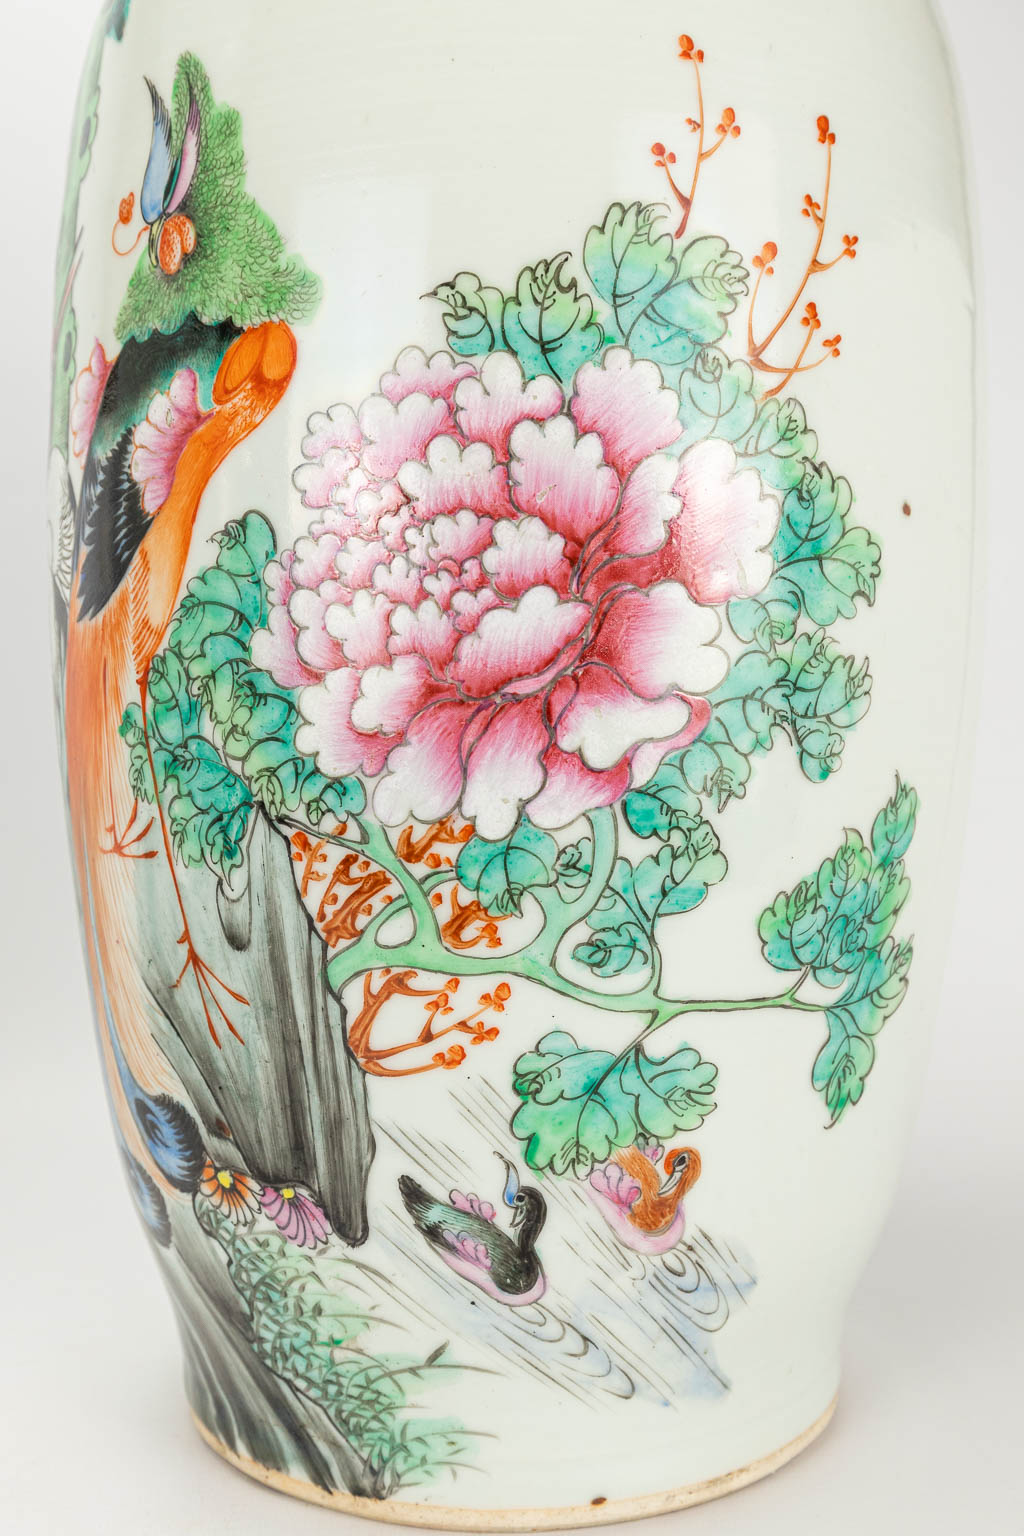 Een paar vazen gemaakt uit Chinees porselein versierd met pauwen en kraanvogels.